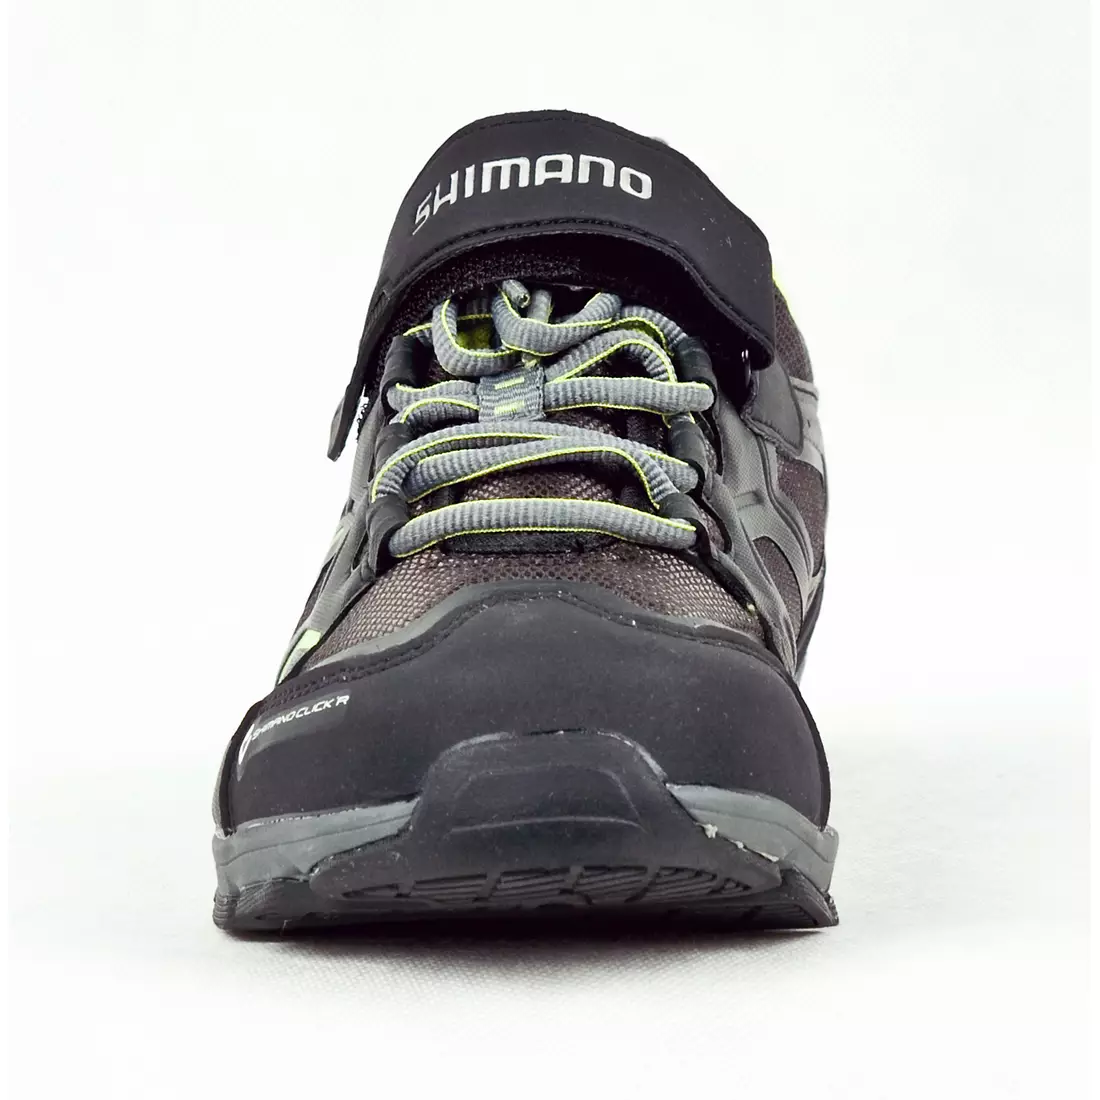 SHIMANO SH-CT70 - szabadidős kerékpáros cipő CLICK'R rendszerrel, szín: fekete és zöld